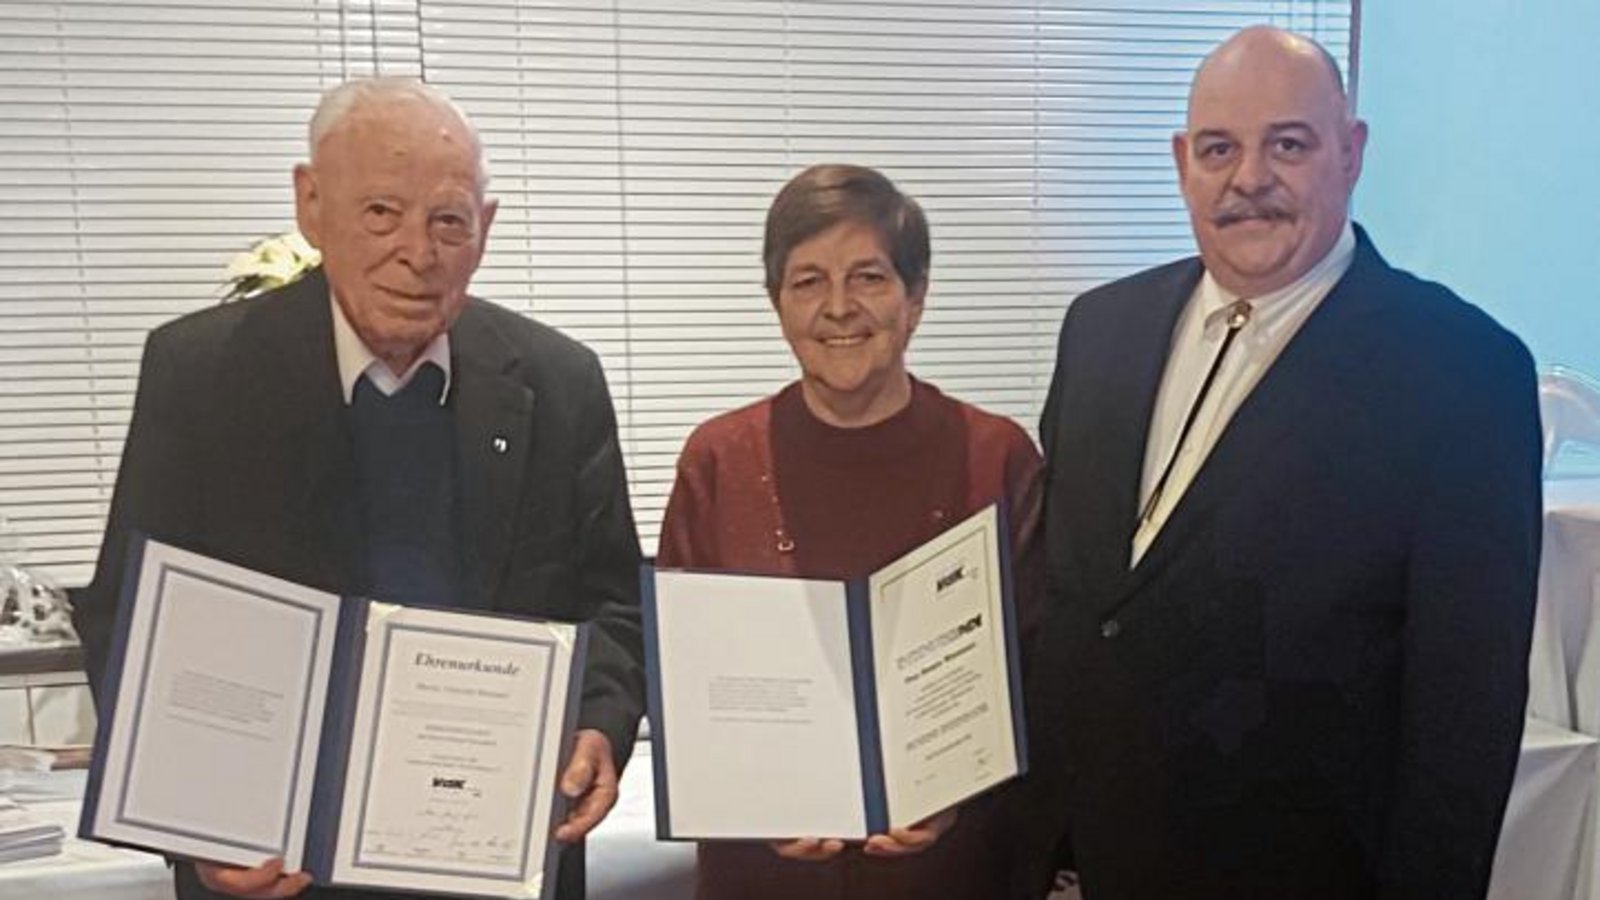 Der Ortsverbandsvorsitzende Andreas Wizemann (von rechts) überreichte Renate Wizemann und Albrecht Brenner die Urkunden für die Ehrenmitgliedschaft.  Foto: p